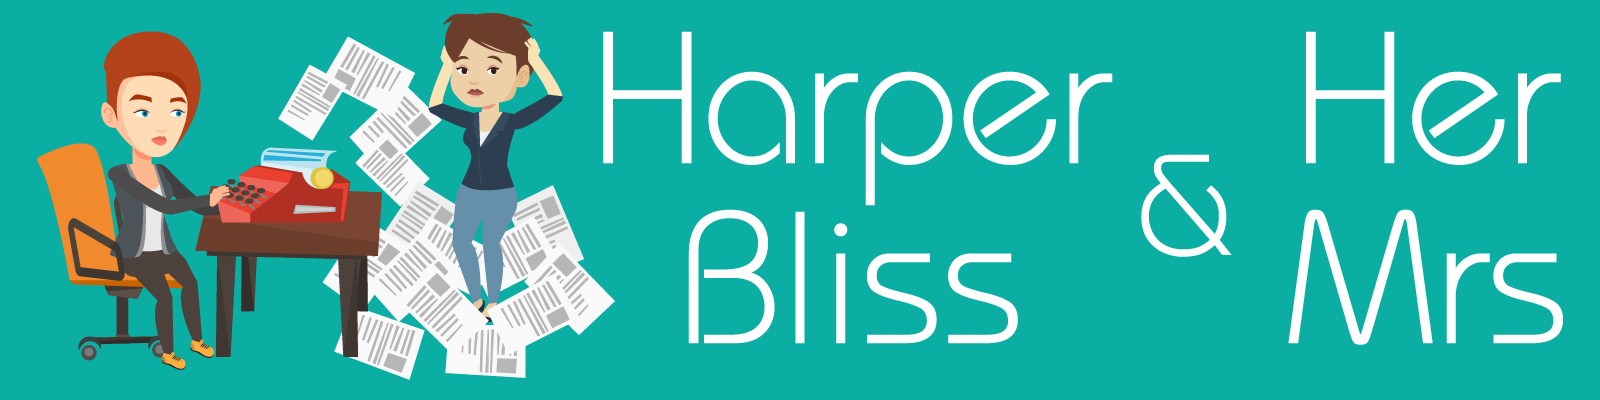 Harper Bliss & Her Mrs